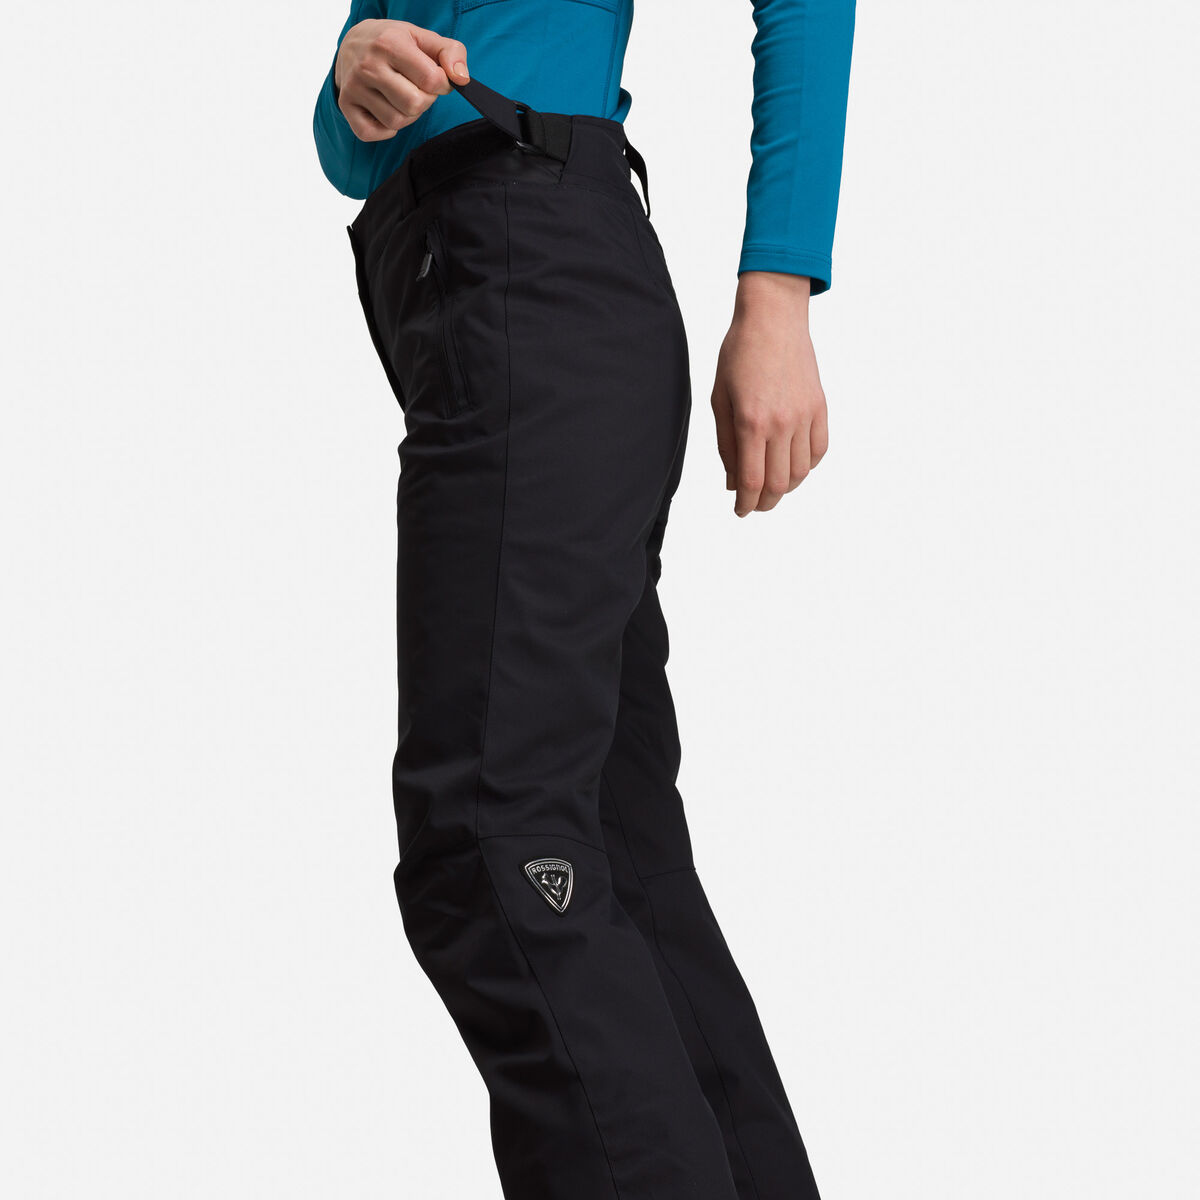 Pantalon de ski Femme ROSSIGNOL en destockage